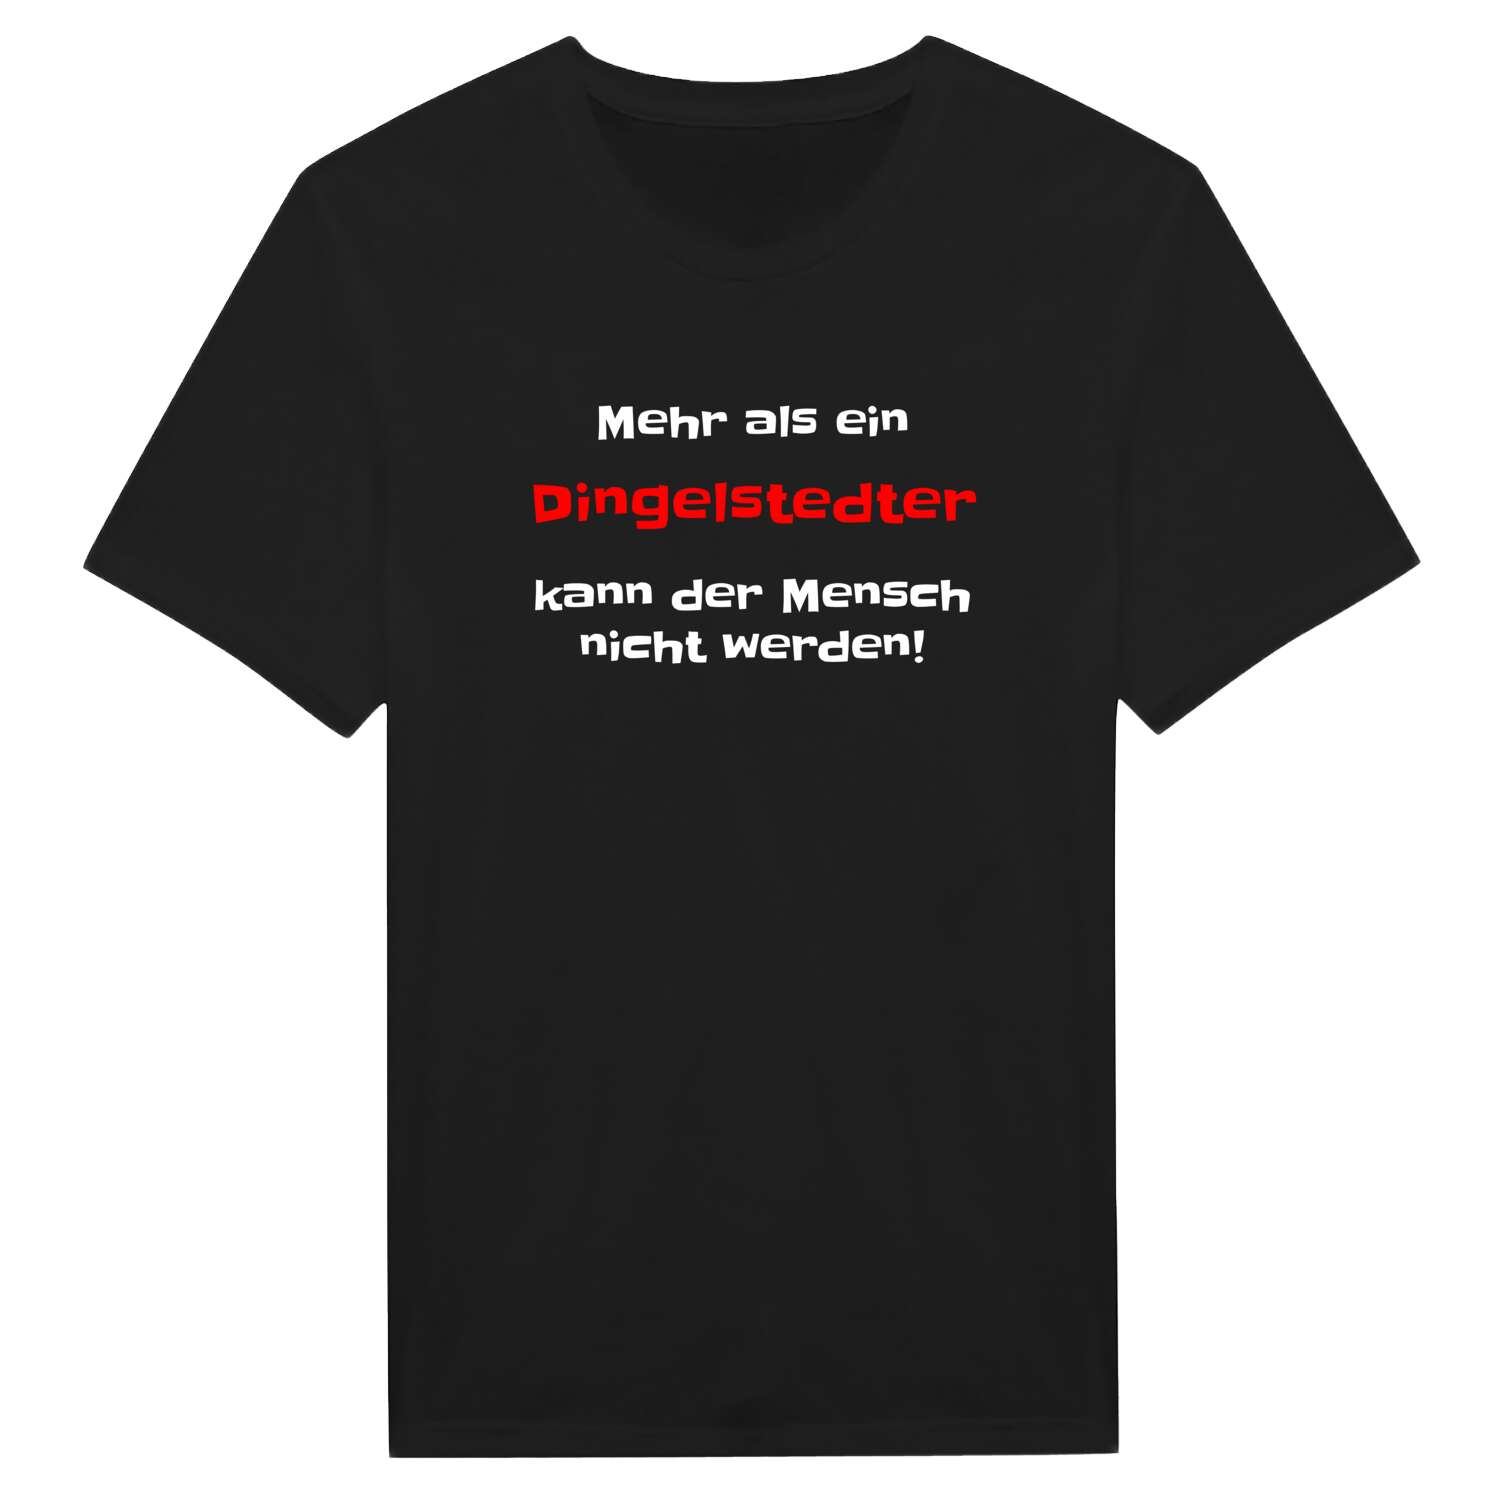 Dingelstedt T-Shirt »Mehr als ein«